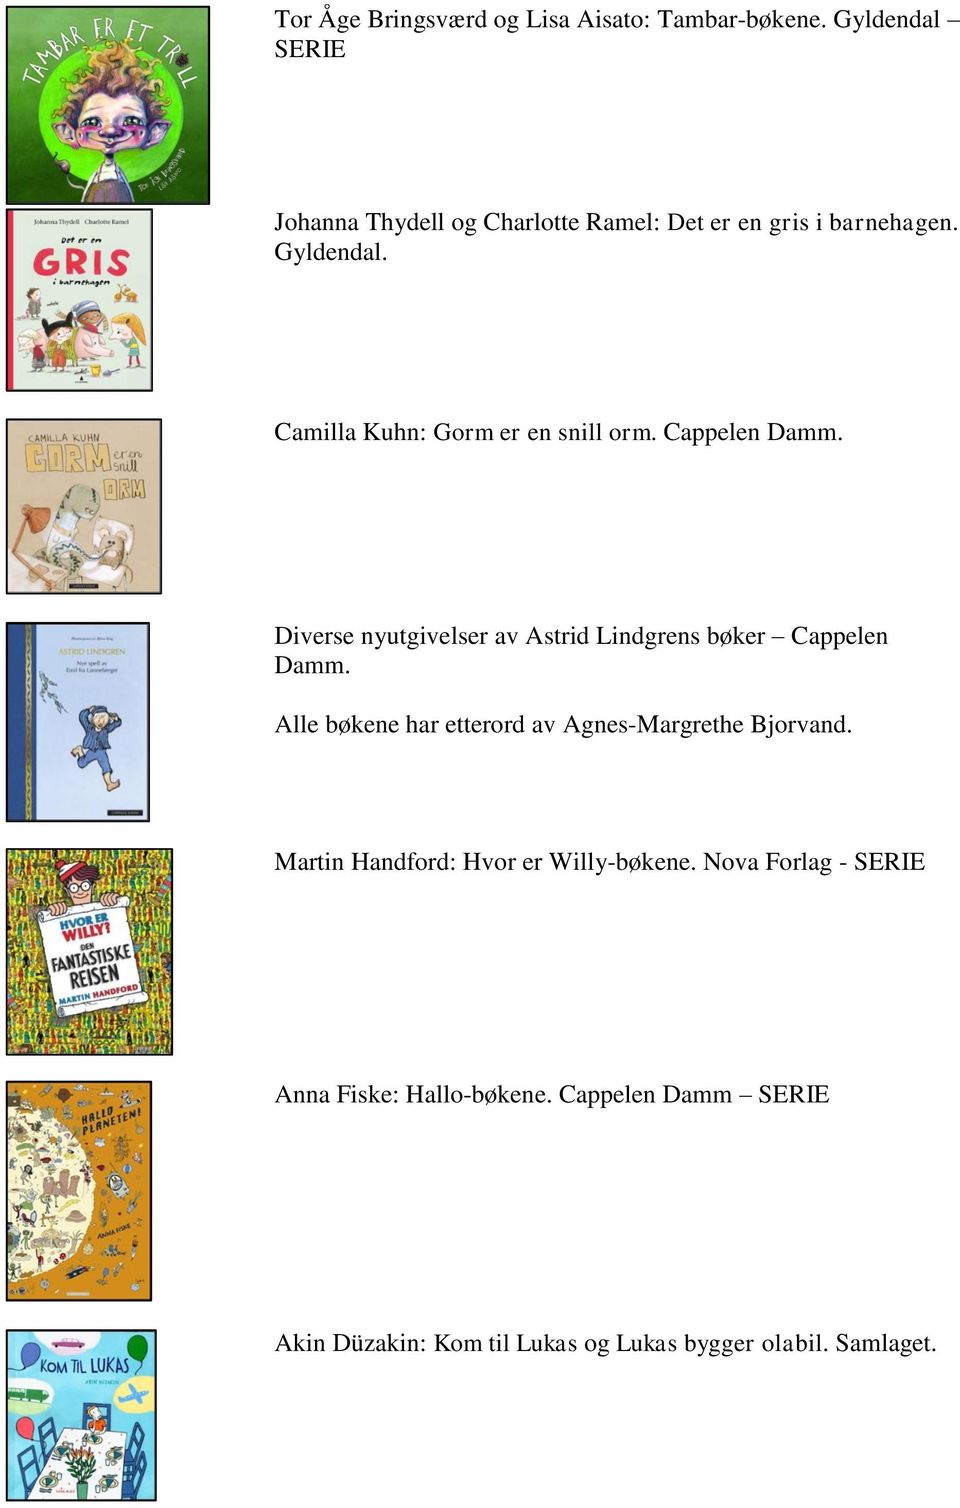 Camilla Kuhn: Gorm er en snill orm. Cappelen Damm. Diverse nyutgivelser av Astrid Lindgrens bøker Cappelen Damm.